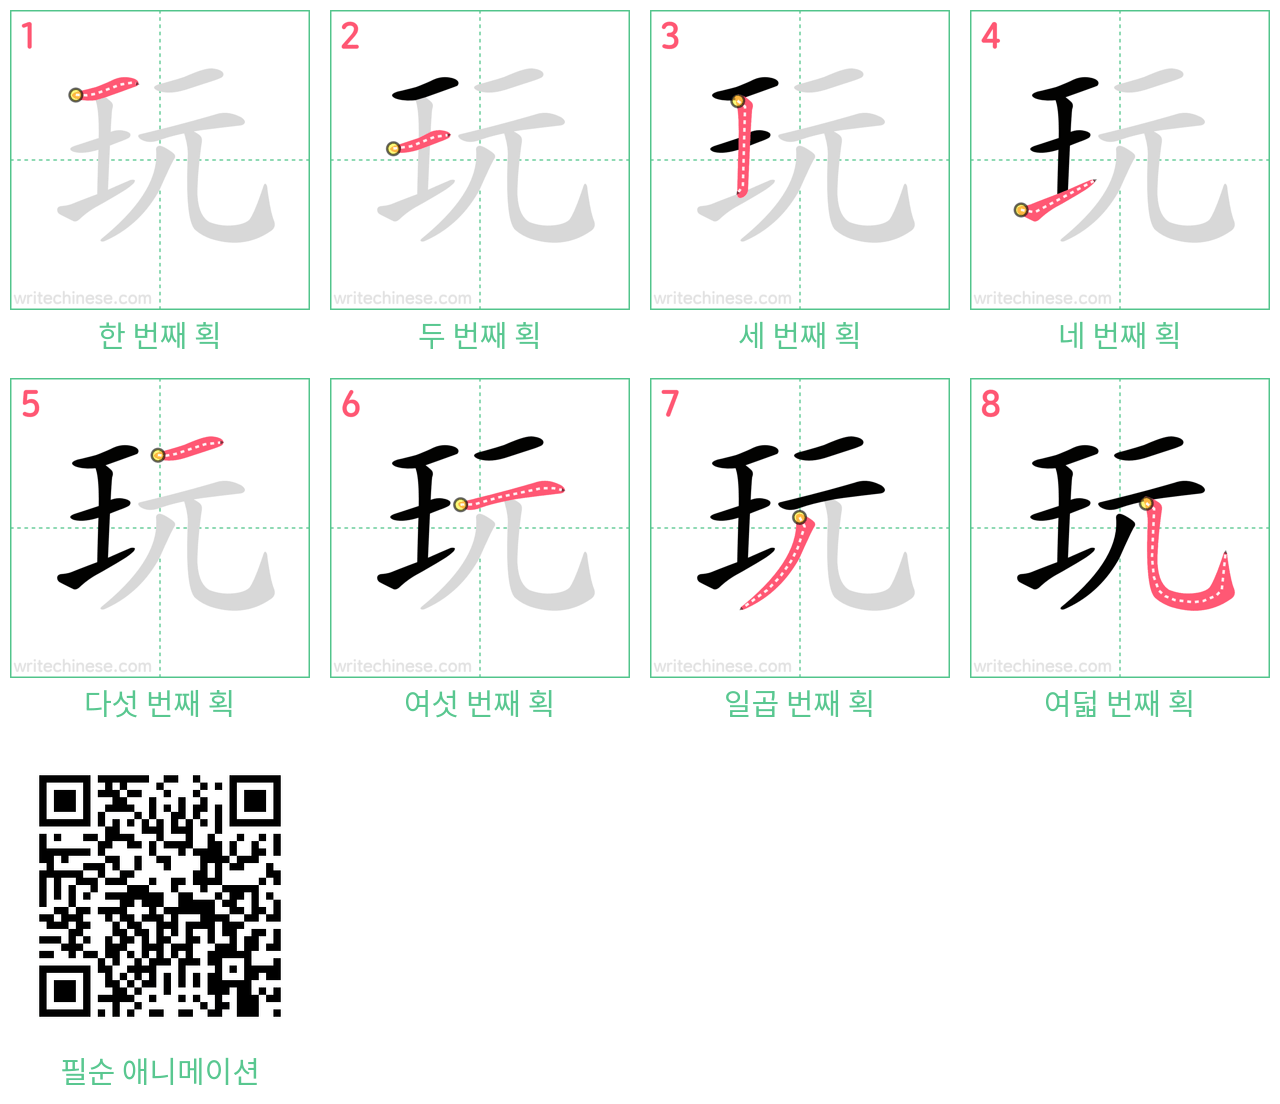 玩 step-by-step stroke order diagrams